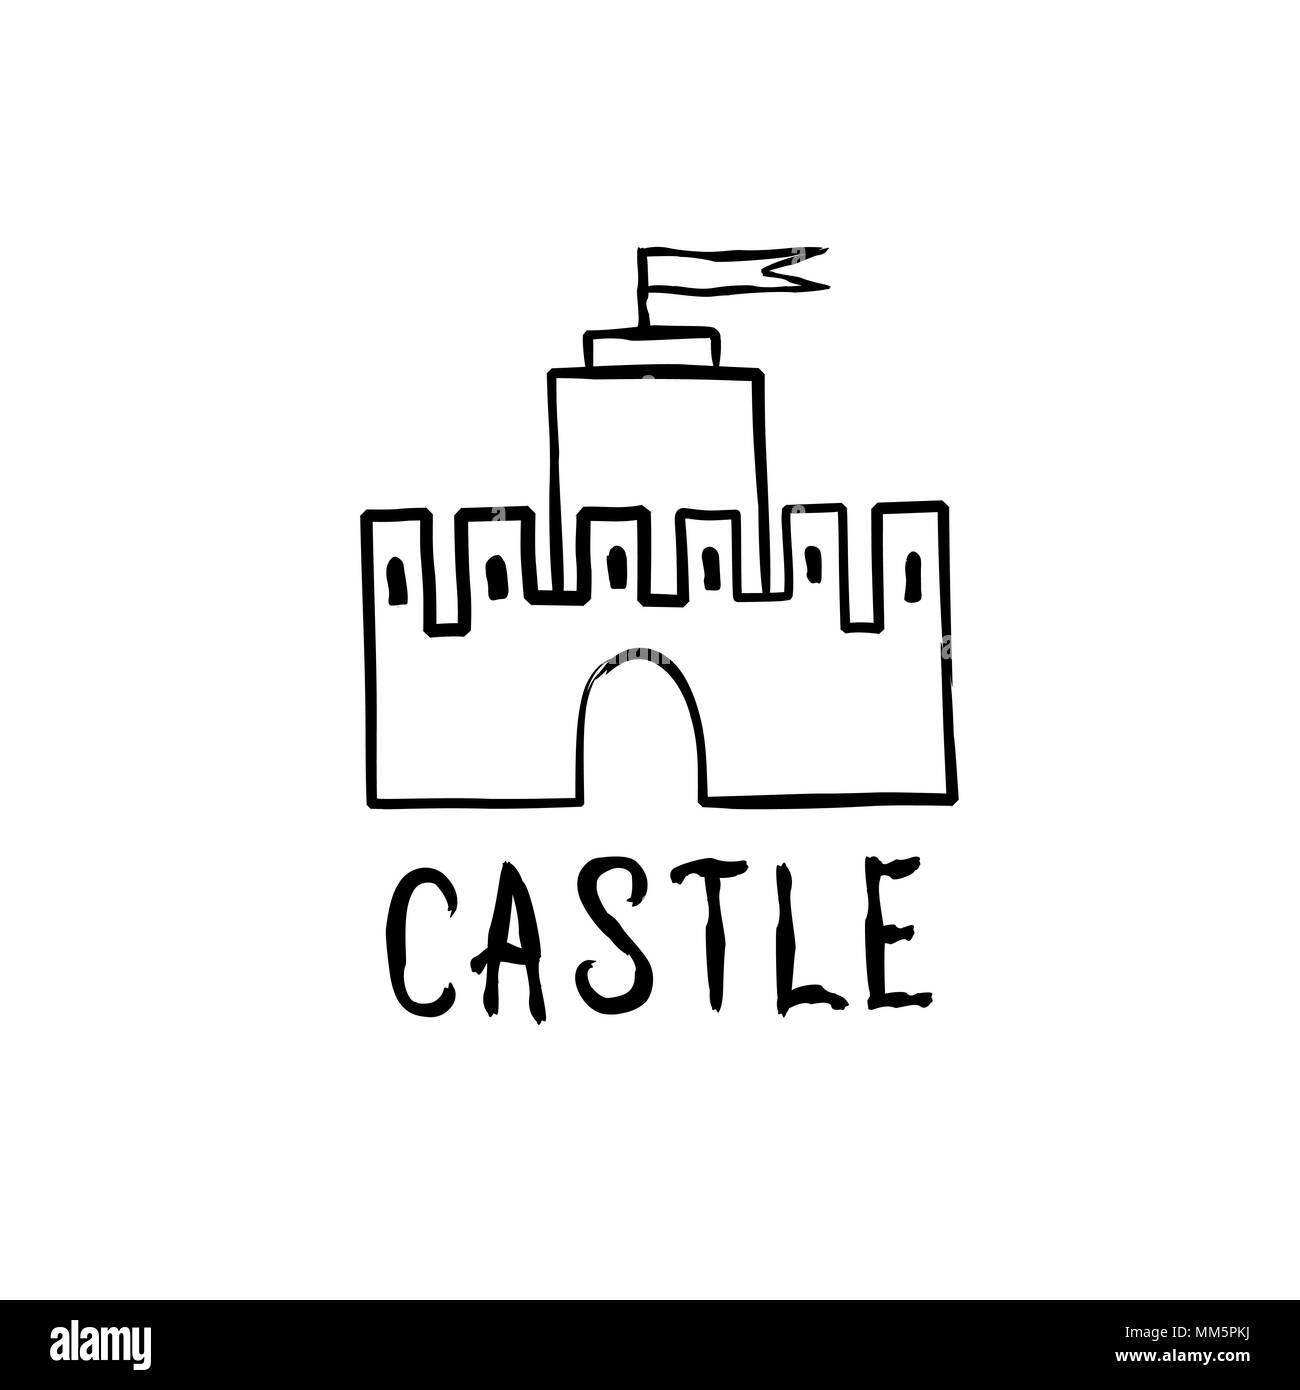 Icono del castillo. Dibujadas a mano doodle castillo edificio aislado con letras manuscritas castillo Ilustración del Vector